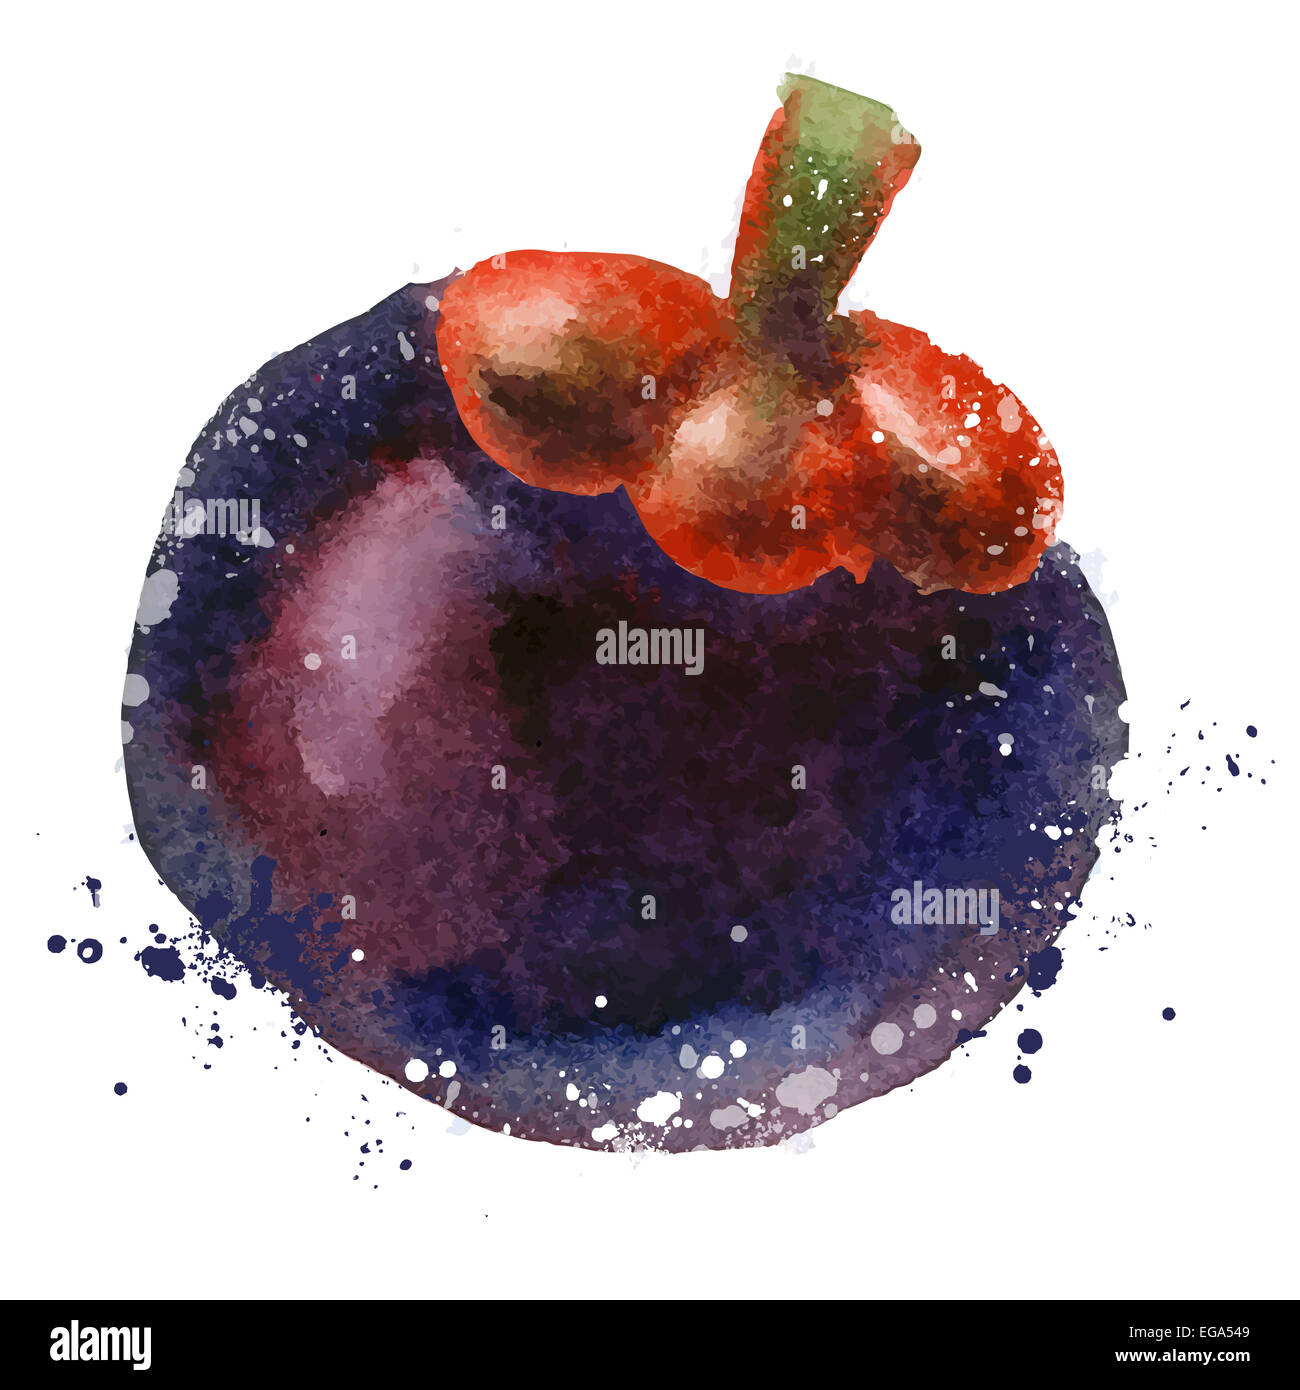 Aquarell. Mangostan-Frucht auf einem weißen Hintergrund. Vektor-illustration Stockfoto